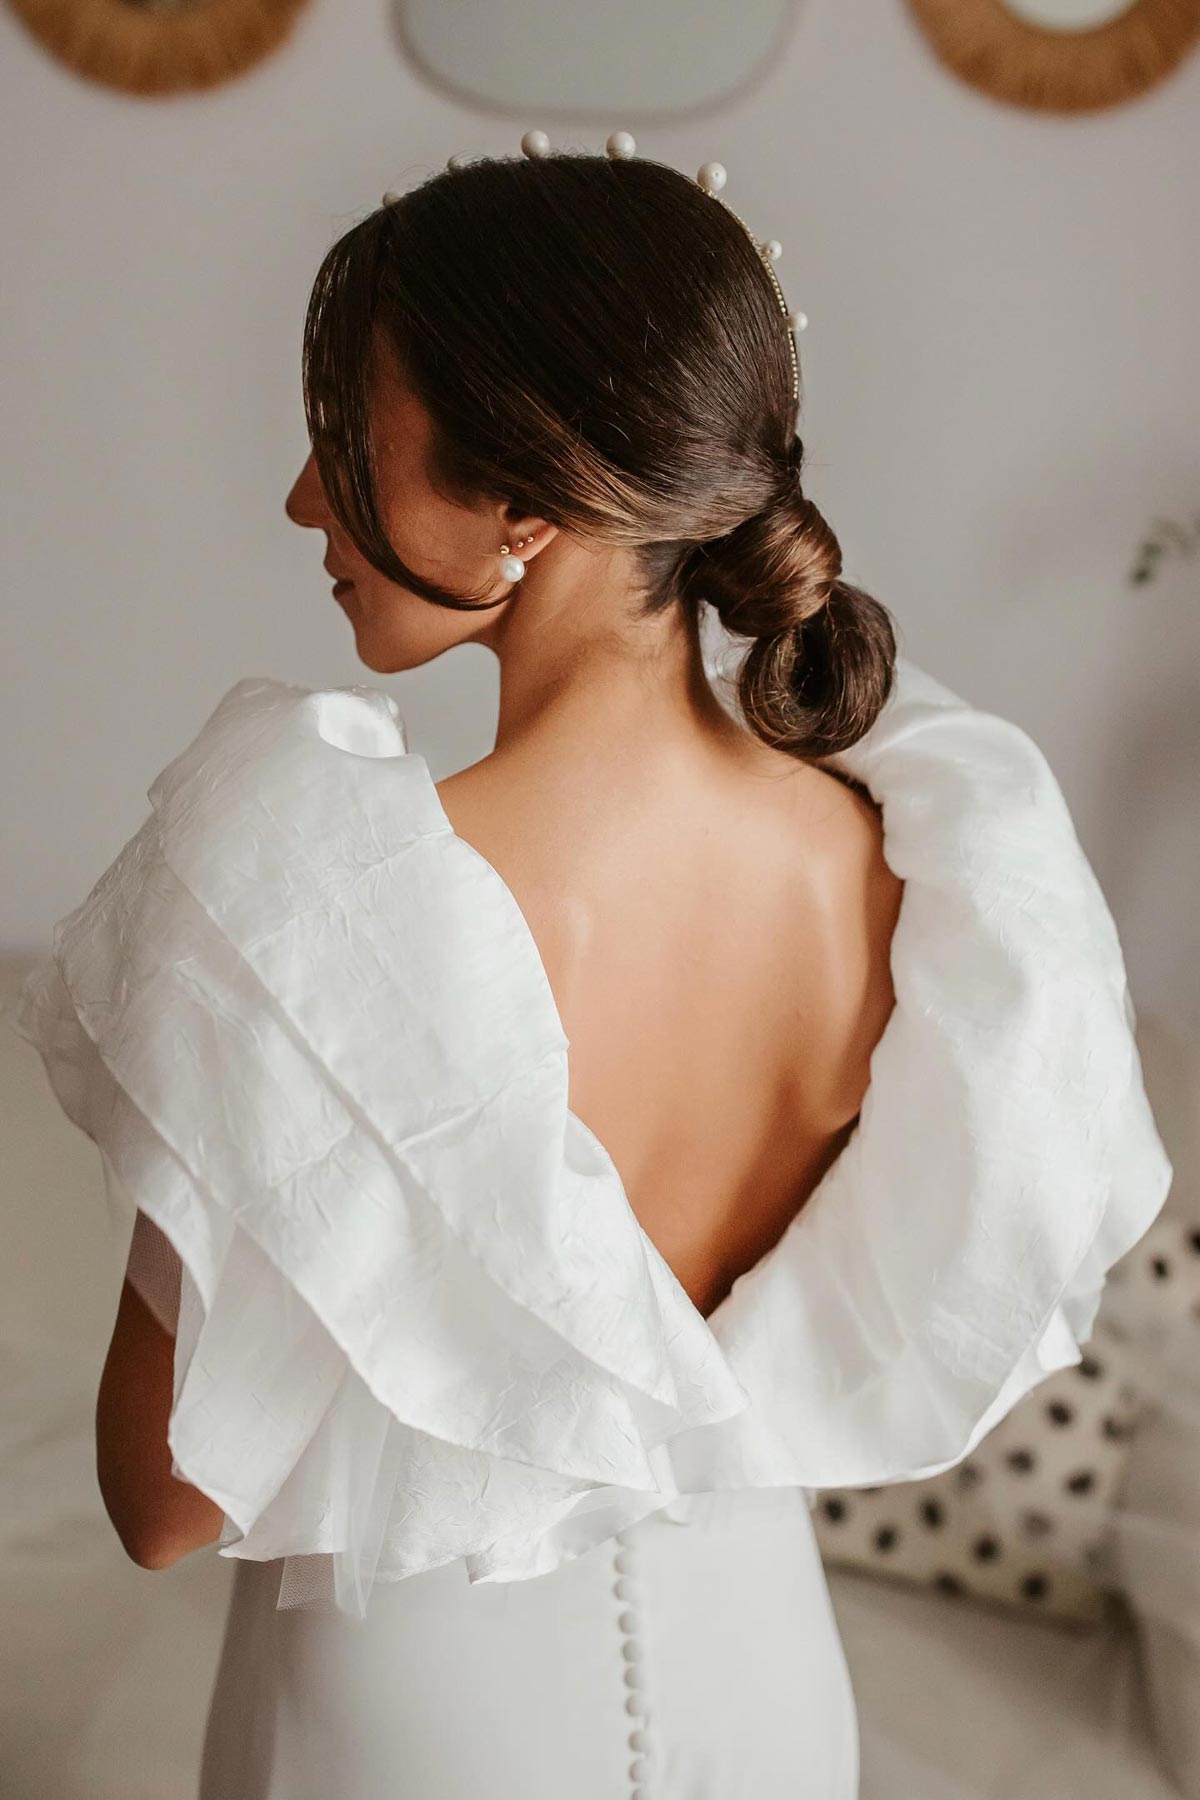 Espalda de novia, puede desviar la atención del sudor en el vestido.